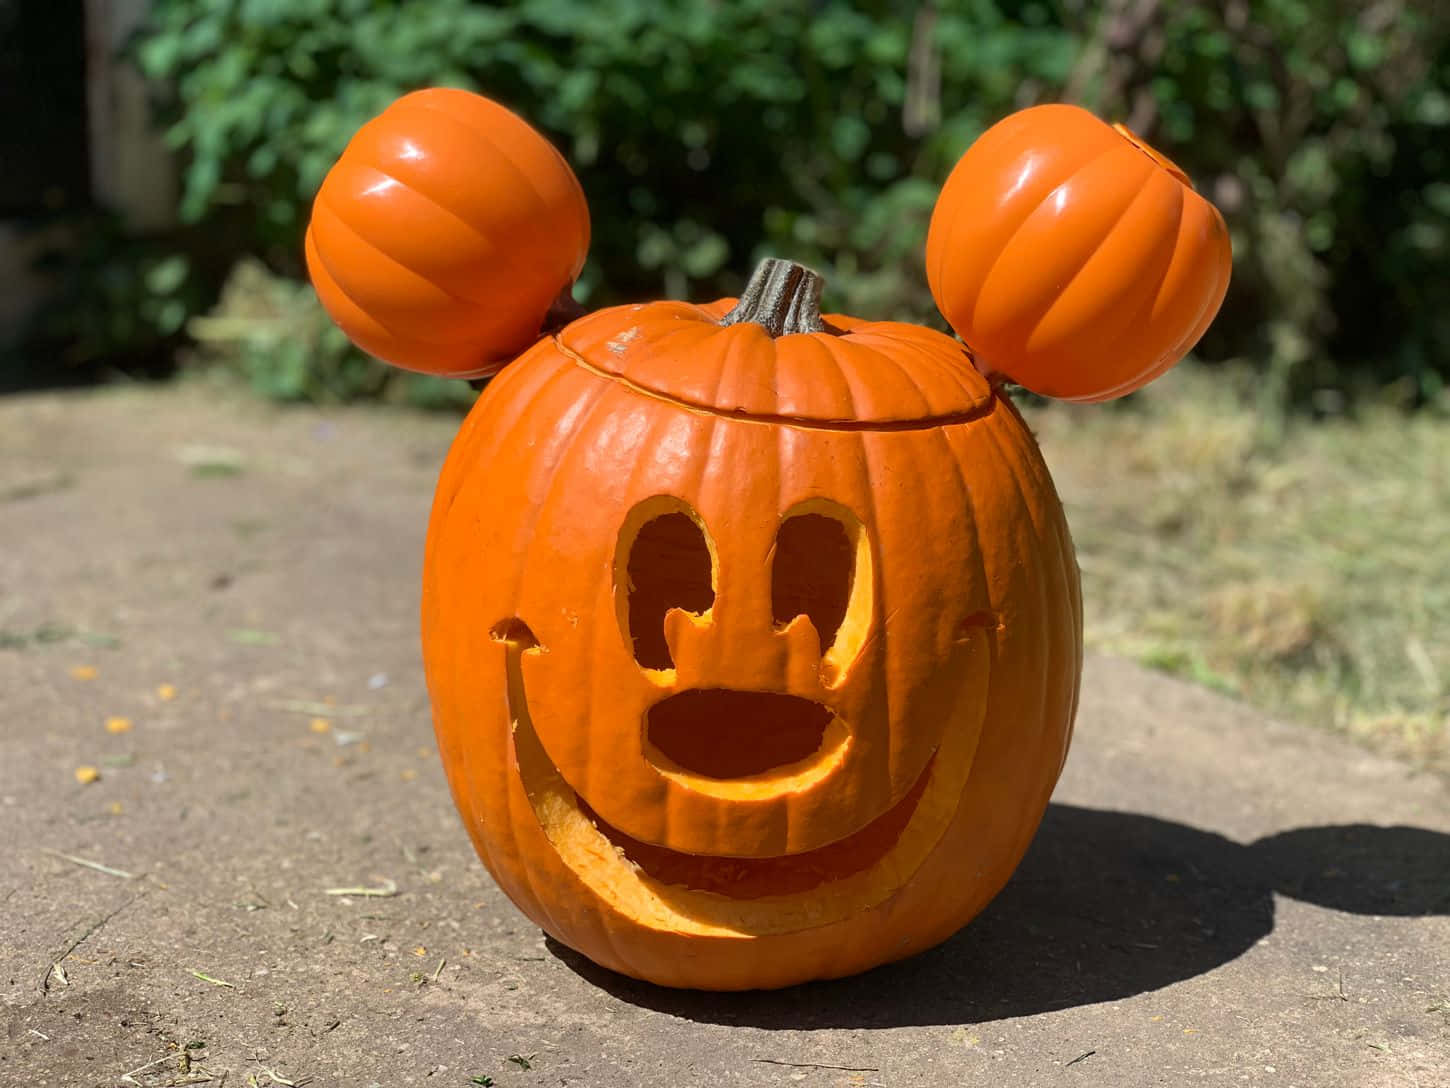 Imagende Mickey Mouse Con Calabazas De Halloween